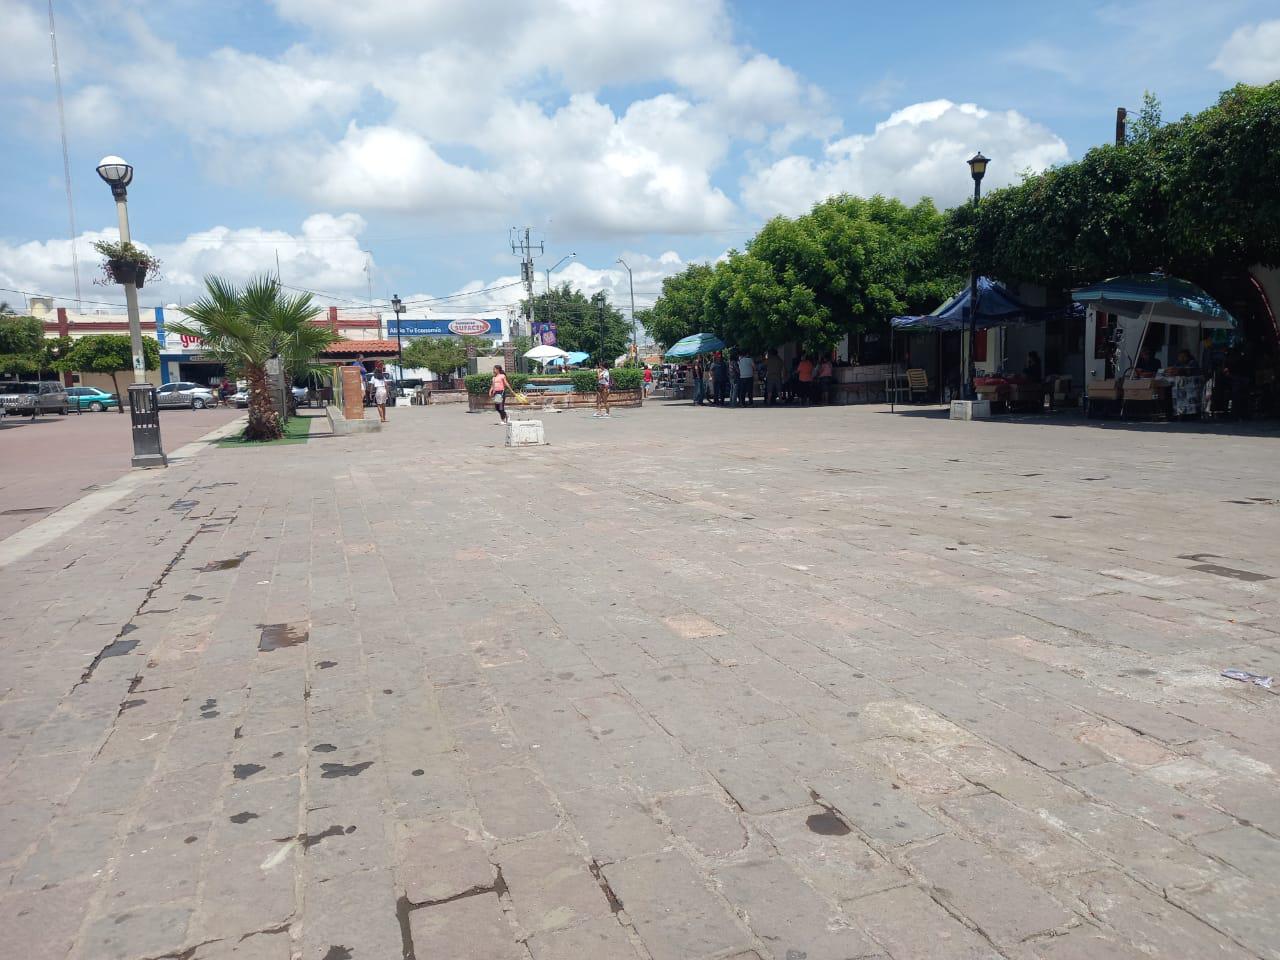 $!Tras protesta, vendedores ambulantes logran quedarse en la plazuela Ramón Corona, en Escuinapa